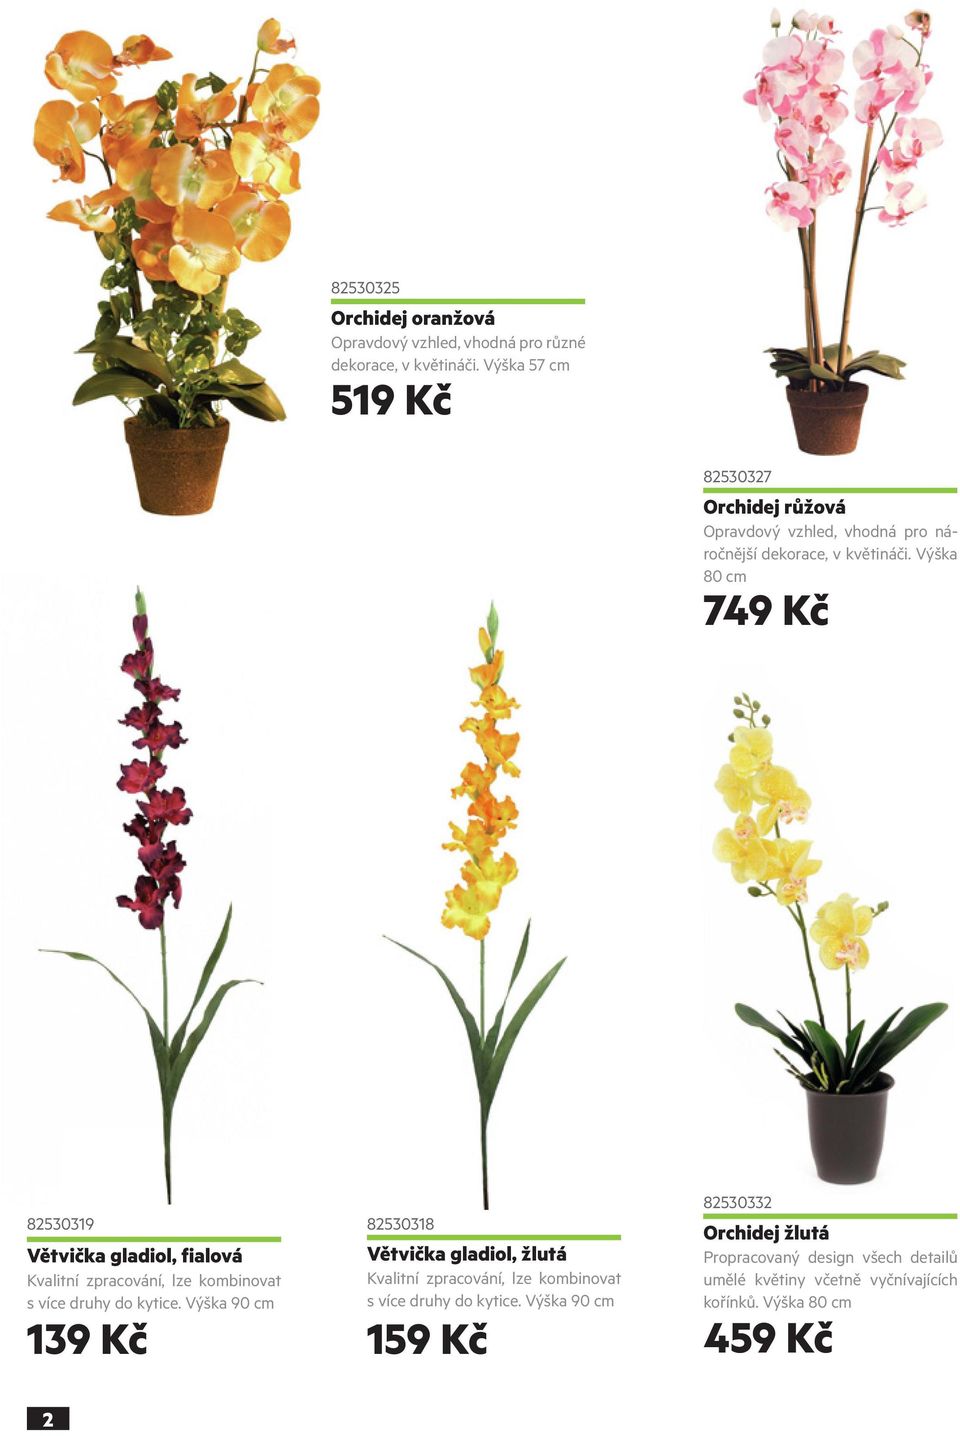 Výška 80 cm 82530327 749 Kč 82530319 Větvička gladiol, fialová Kvalitní zpracování, lze kombinovat s více druhy do kytice.